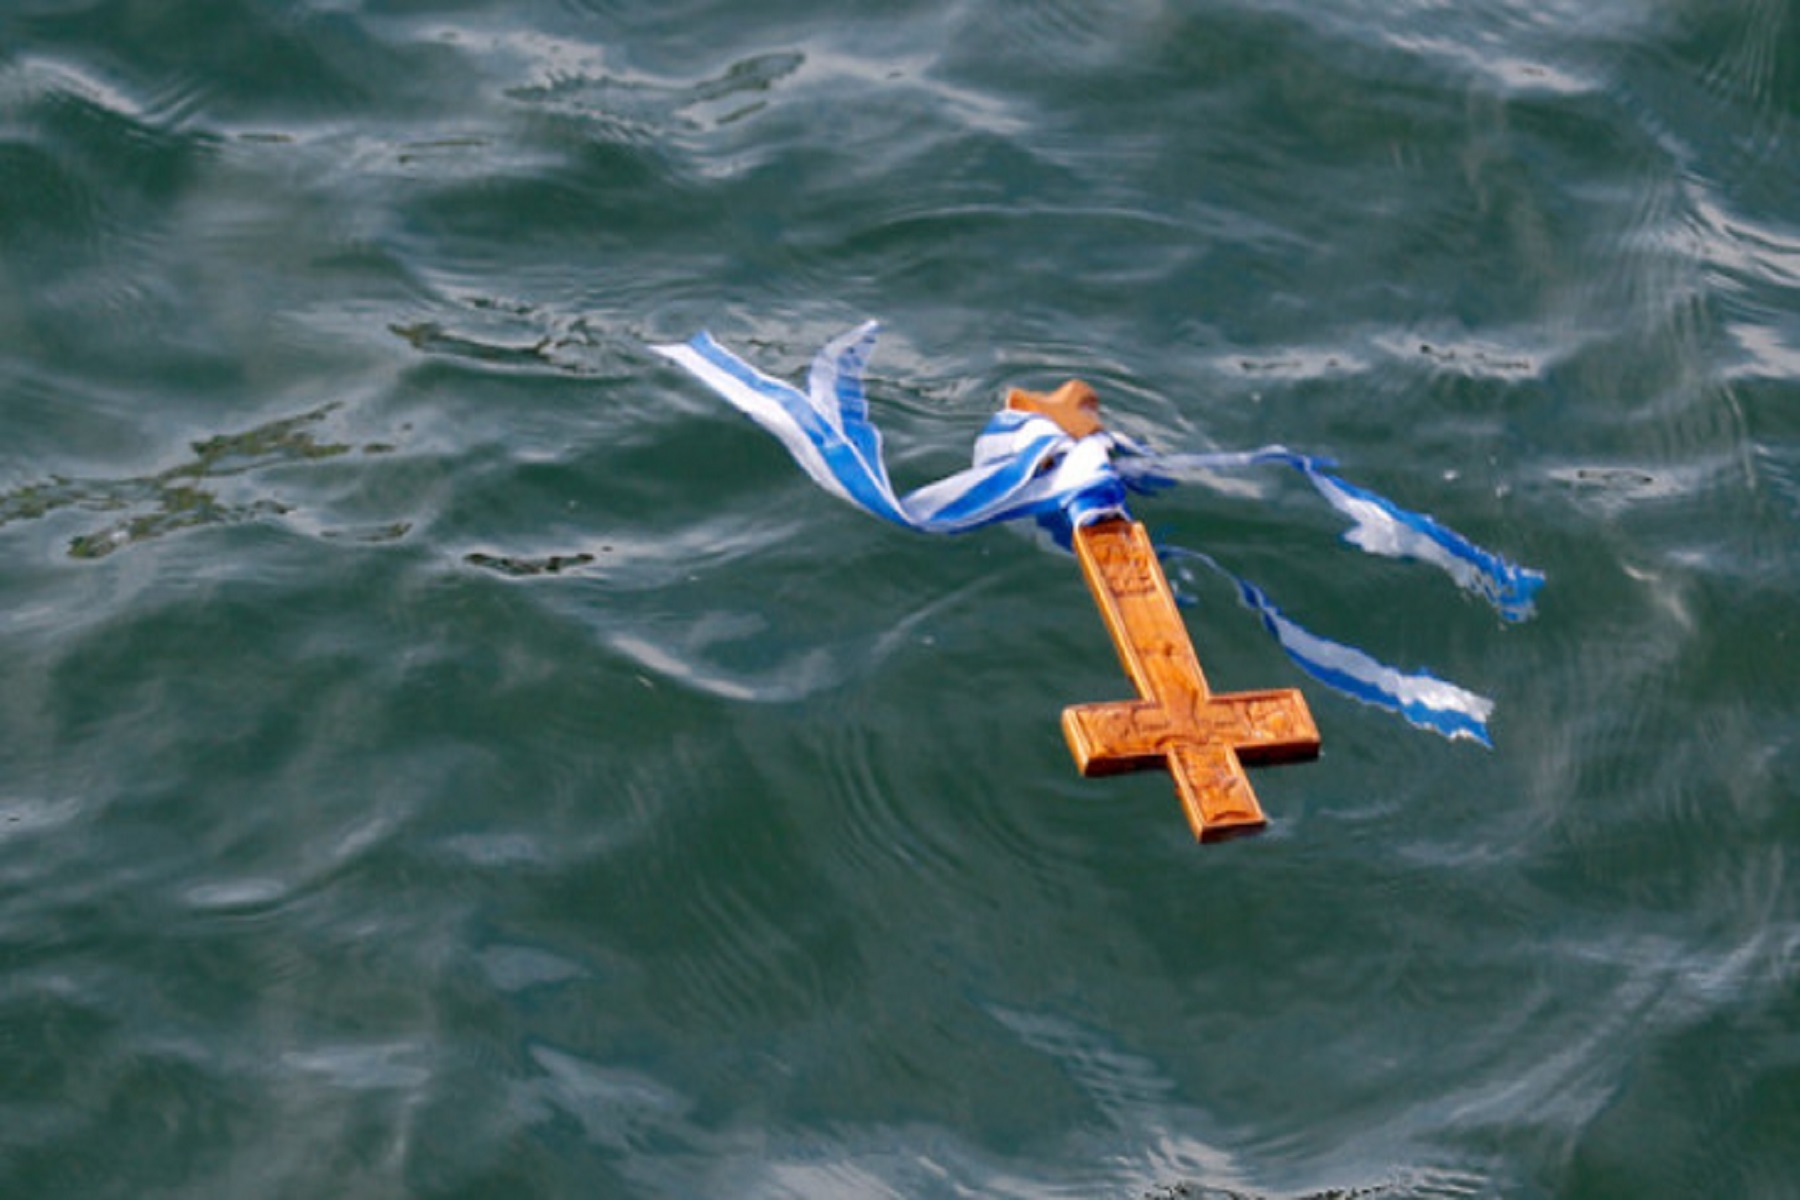 Ιερά Σύνοδος Θεοφάνεια: Σε αντεπίθεση η Εκκλησία για την τέλεση του Αγιασμού των υδάτων